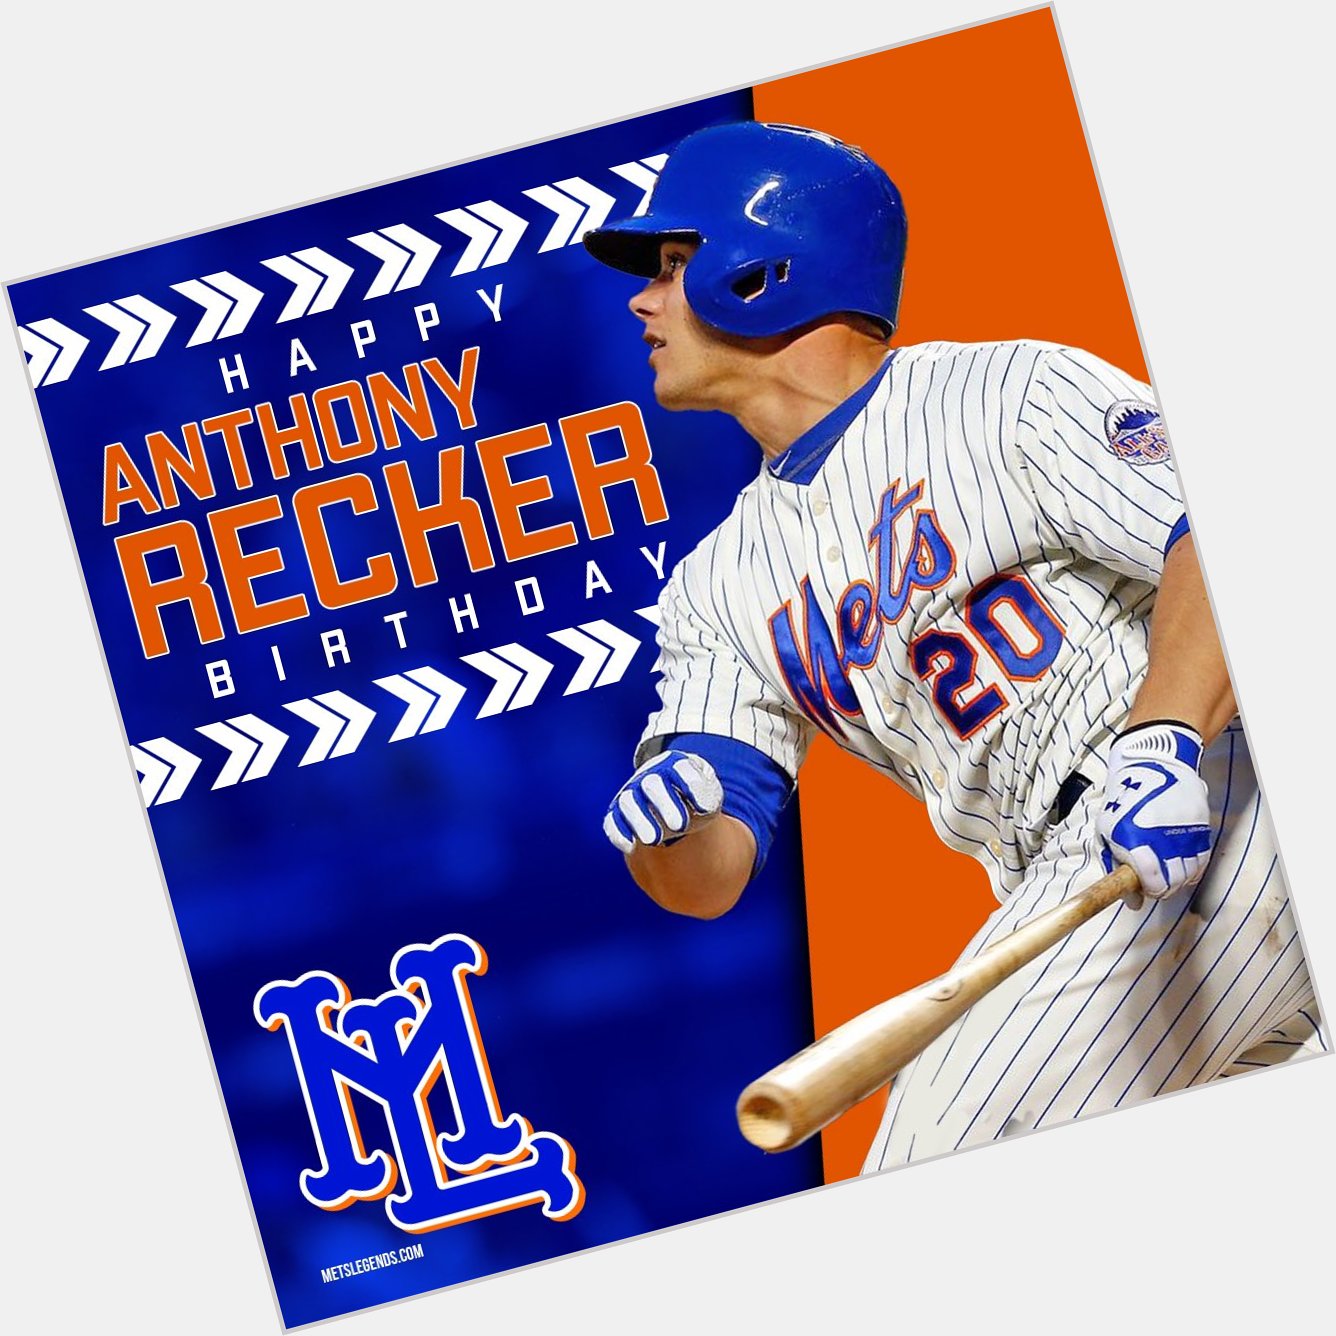 Happy Birthday to former catcher, Anthony Recker! 